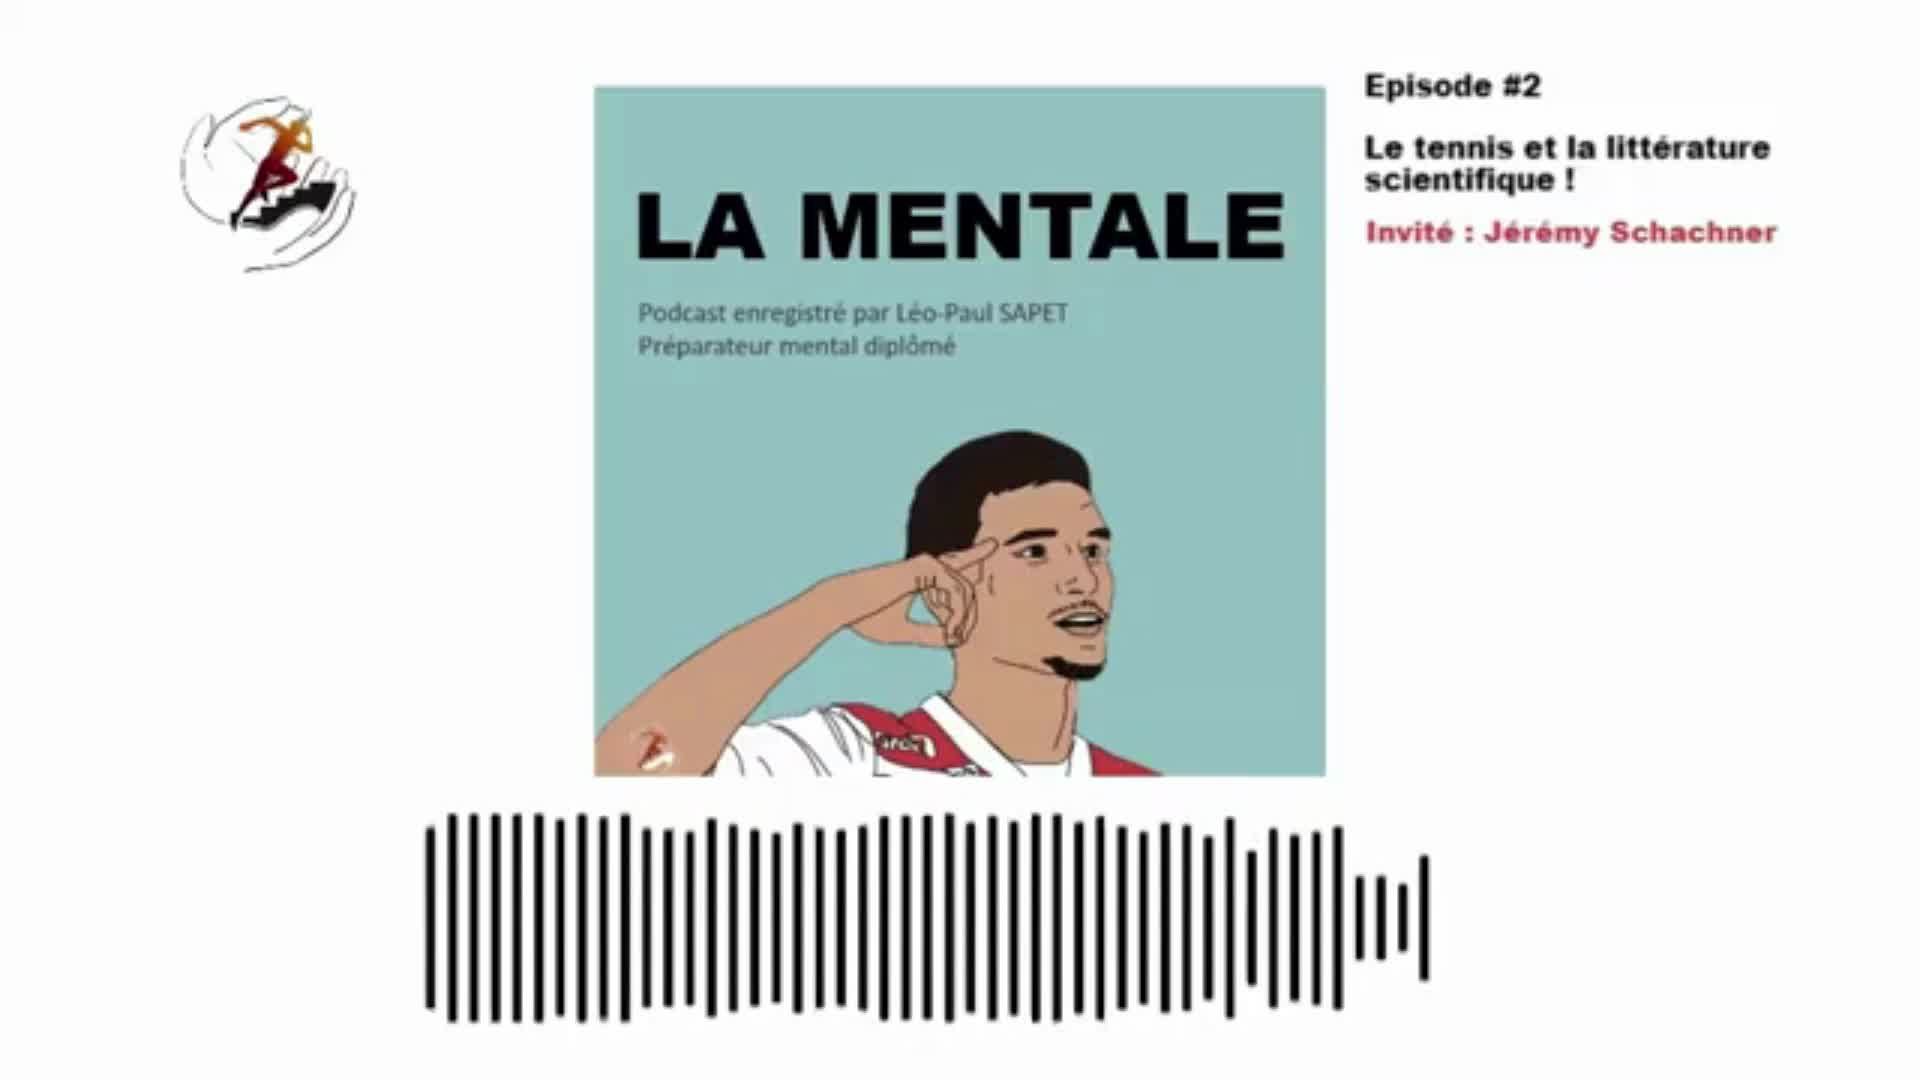  Extrait du Podcast "la mentale" abordant mon approche scientifique  thumbnail